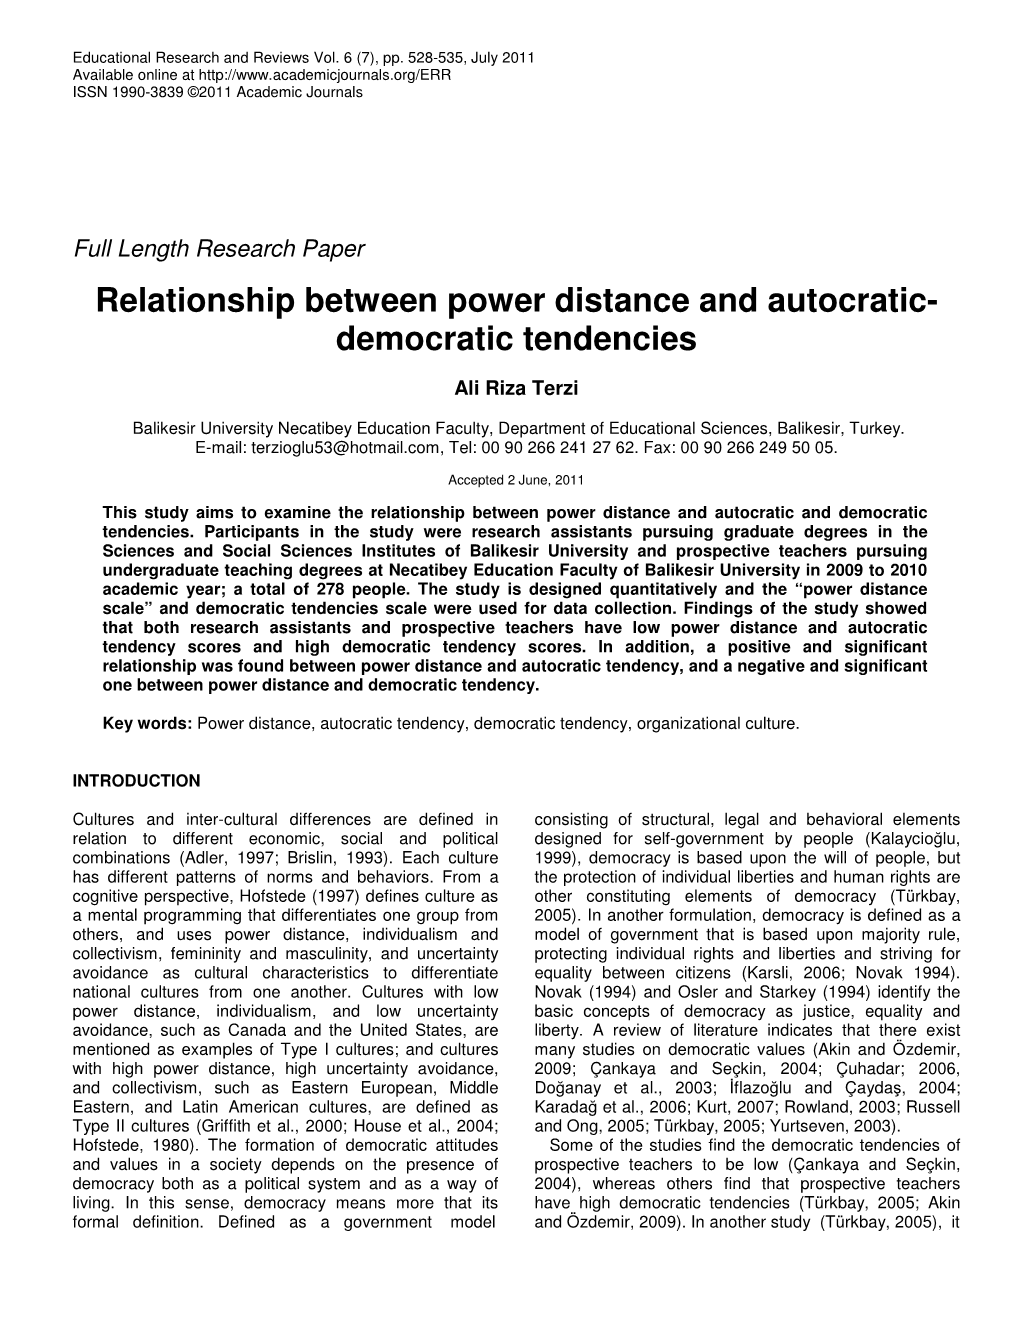 Relationship Between Power Distance and Autocratic- Democratic Tendencies